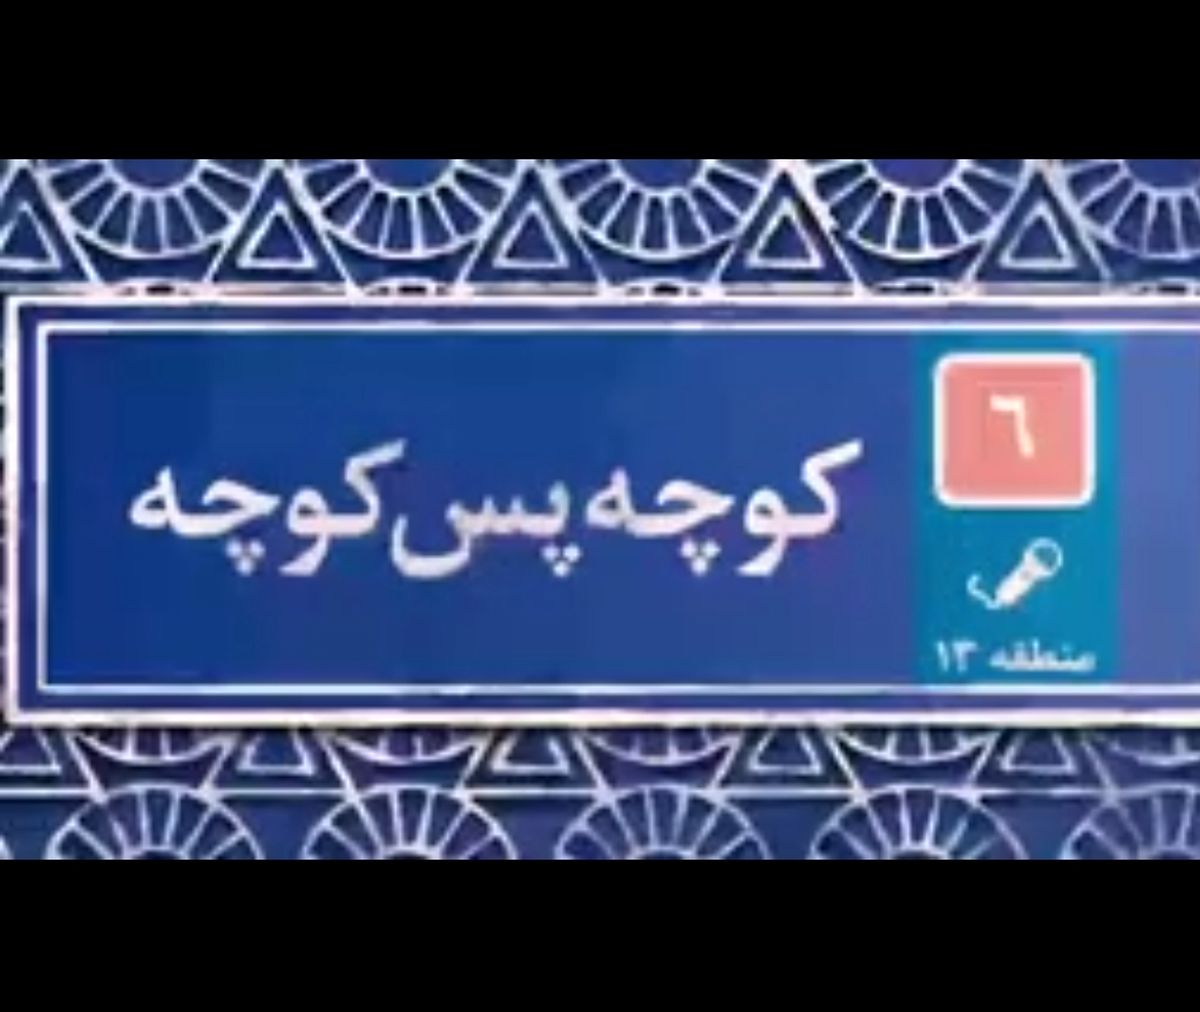 واکنش دیدنی مردم به گرانی ها و تشکر از خدمات دولت حسن روحانی +فیلم